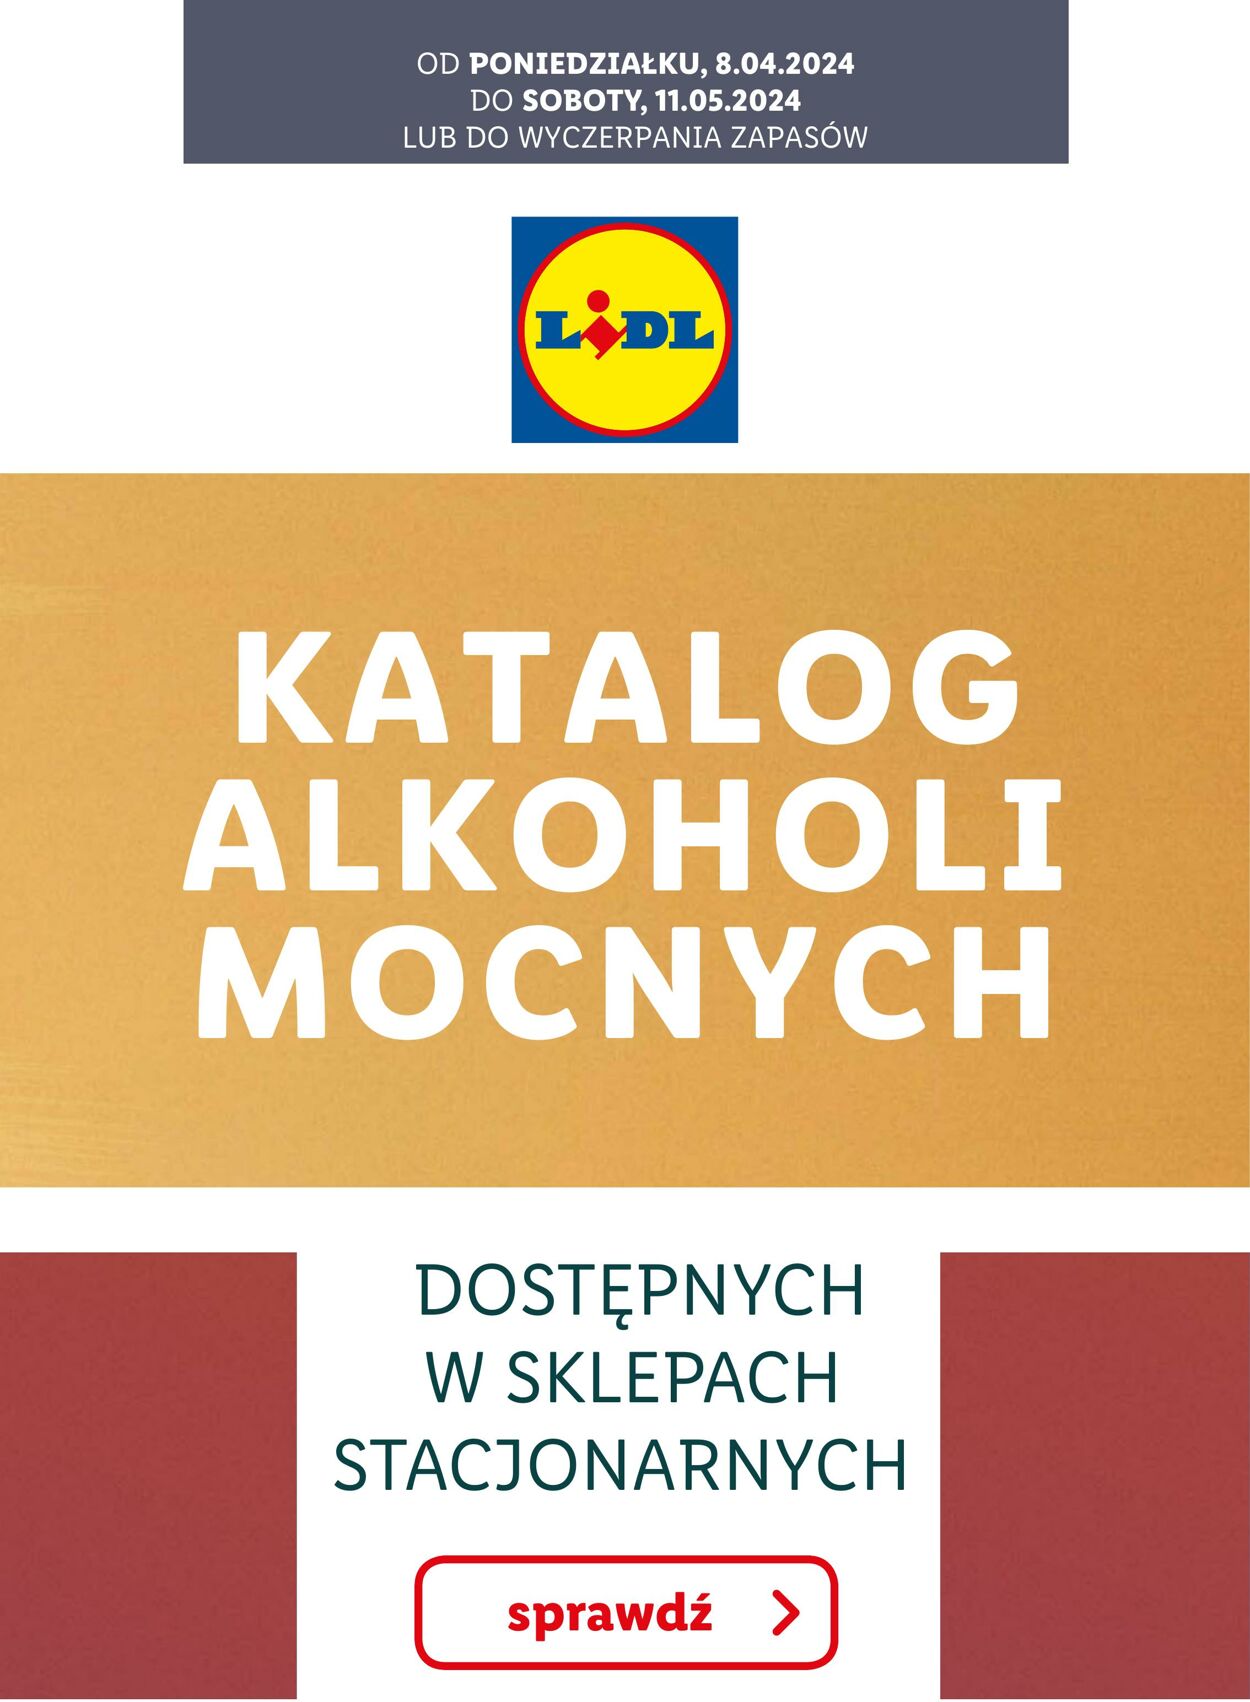 Gazetka Lidl - KATALOG ALKOHOLI MOCNYCH 8 kwi, 2024 - 11 maj, 2024